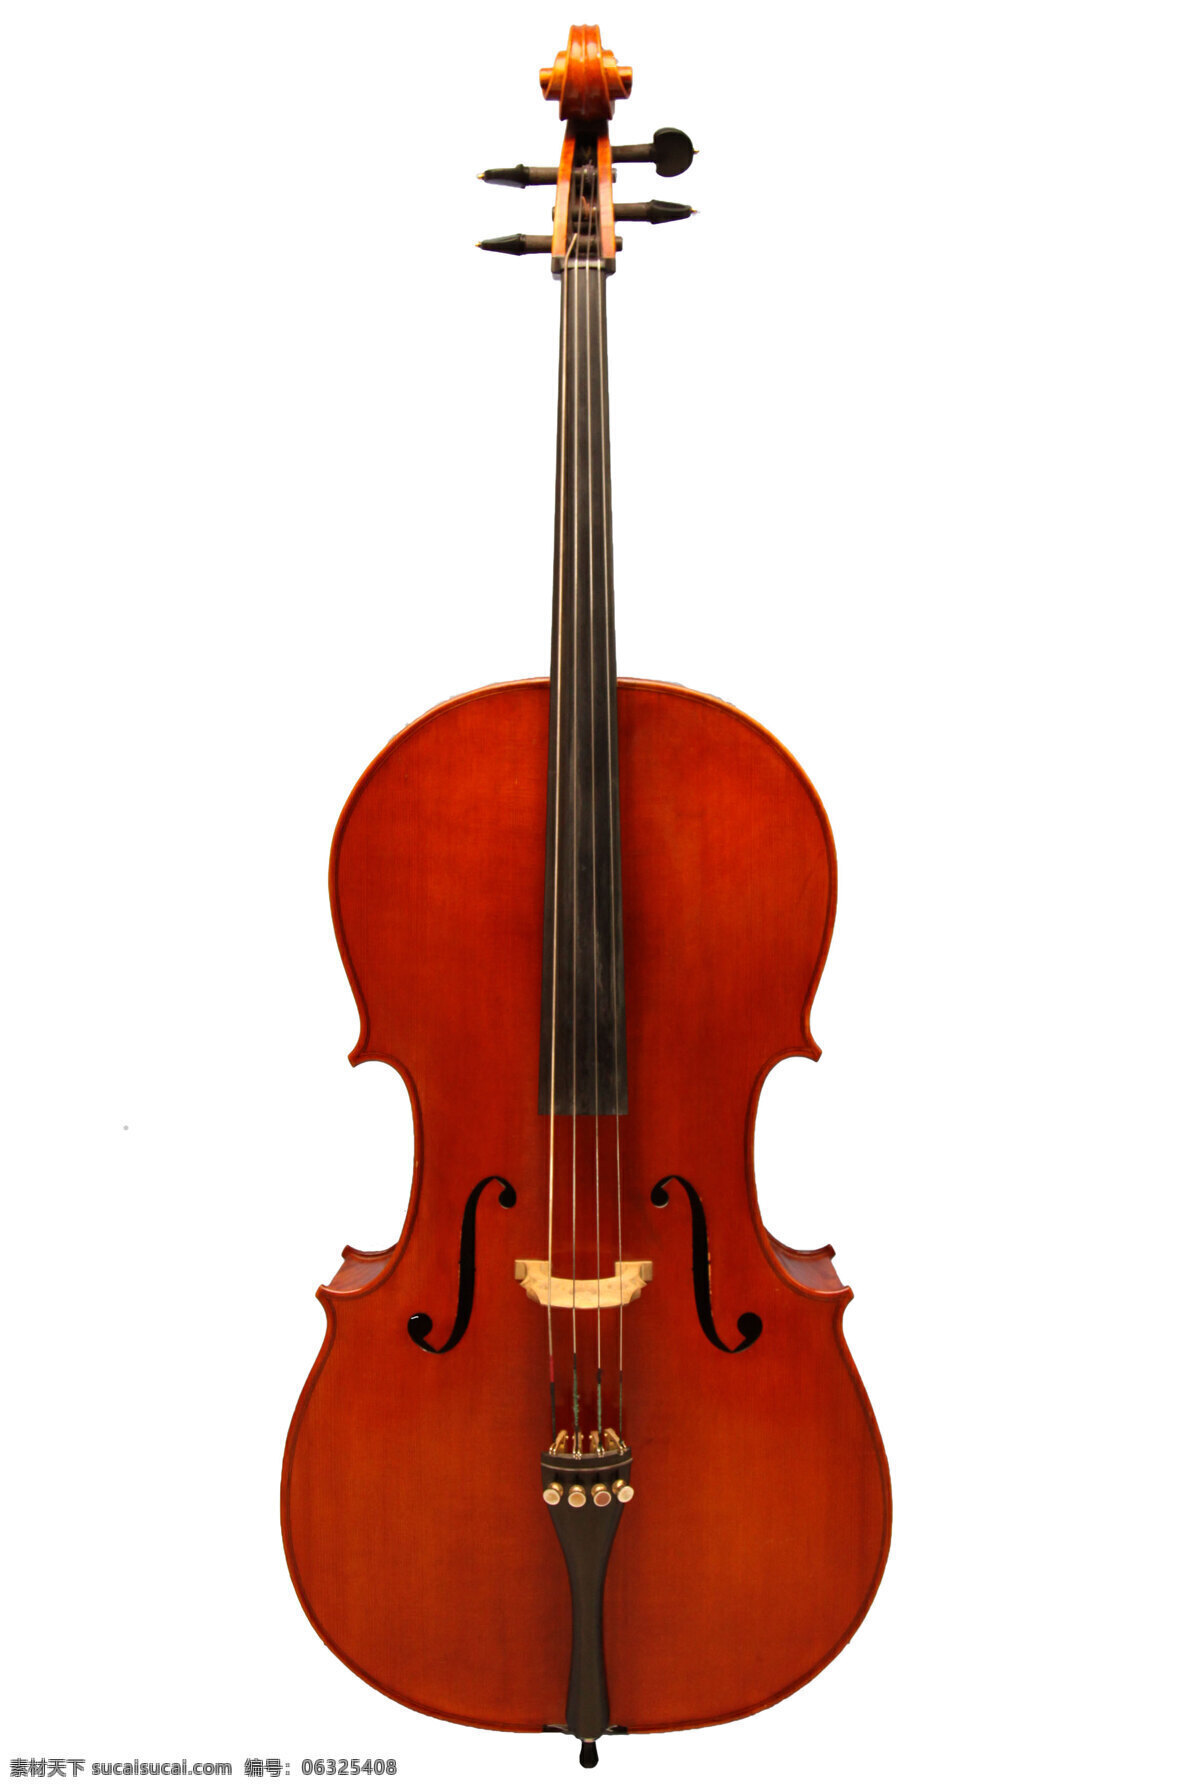 中提琴 乐器 文化艺术 舞蹈音乐 中音提琴 配弓类乐器 擦奏弦鸣乐器 弦乐类乐器 西洋乐器